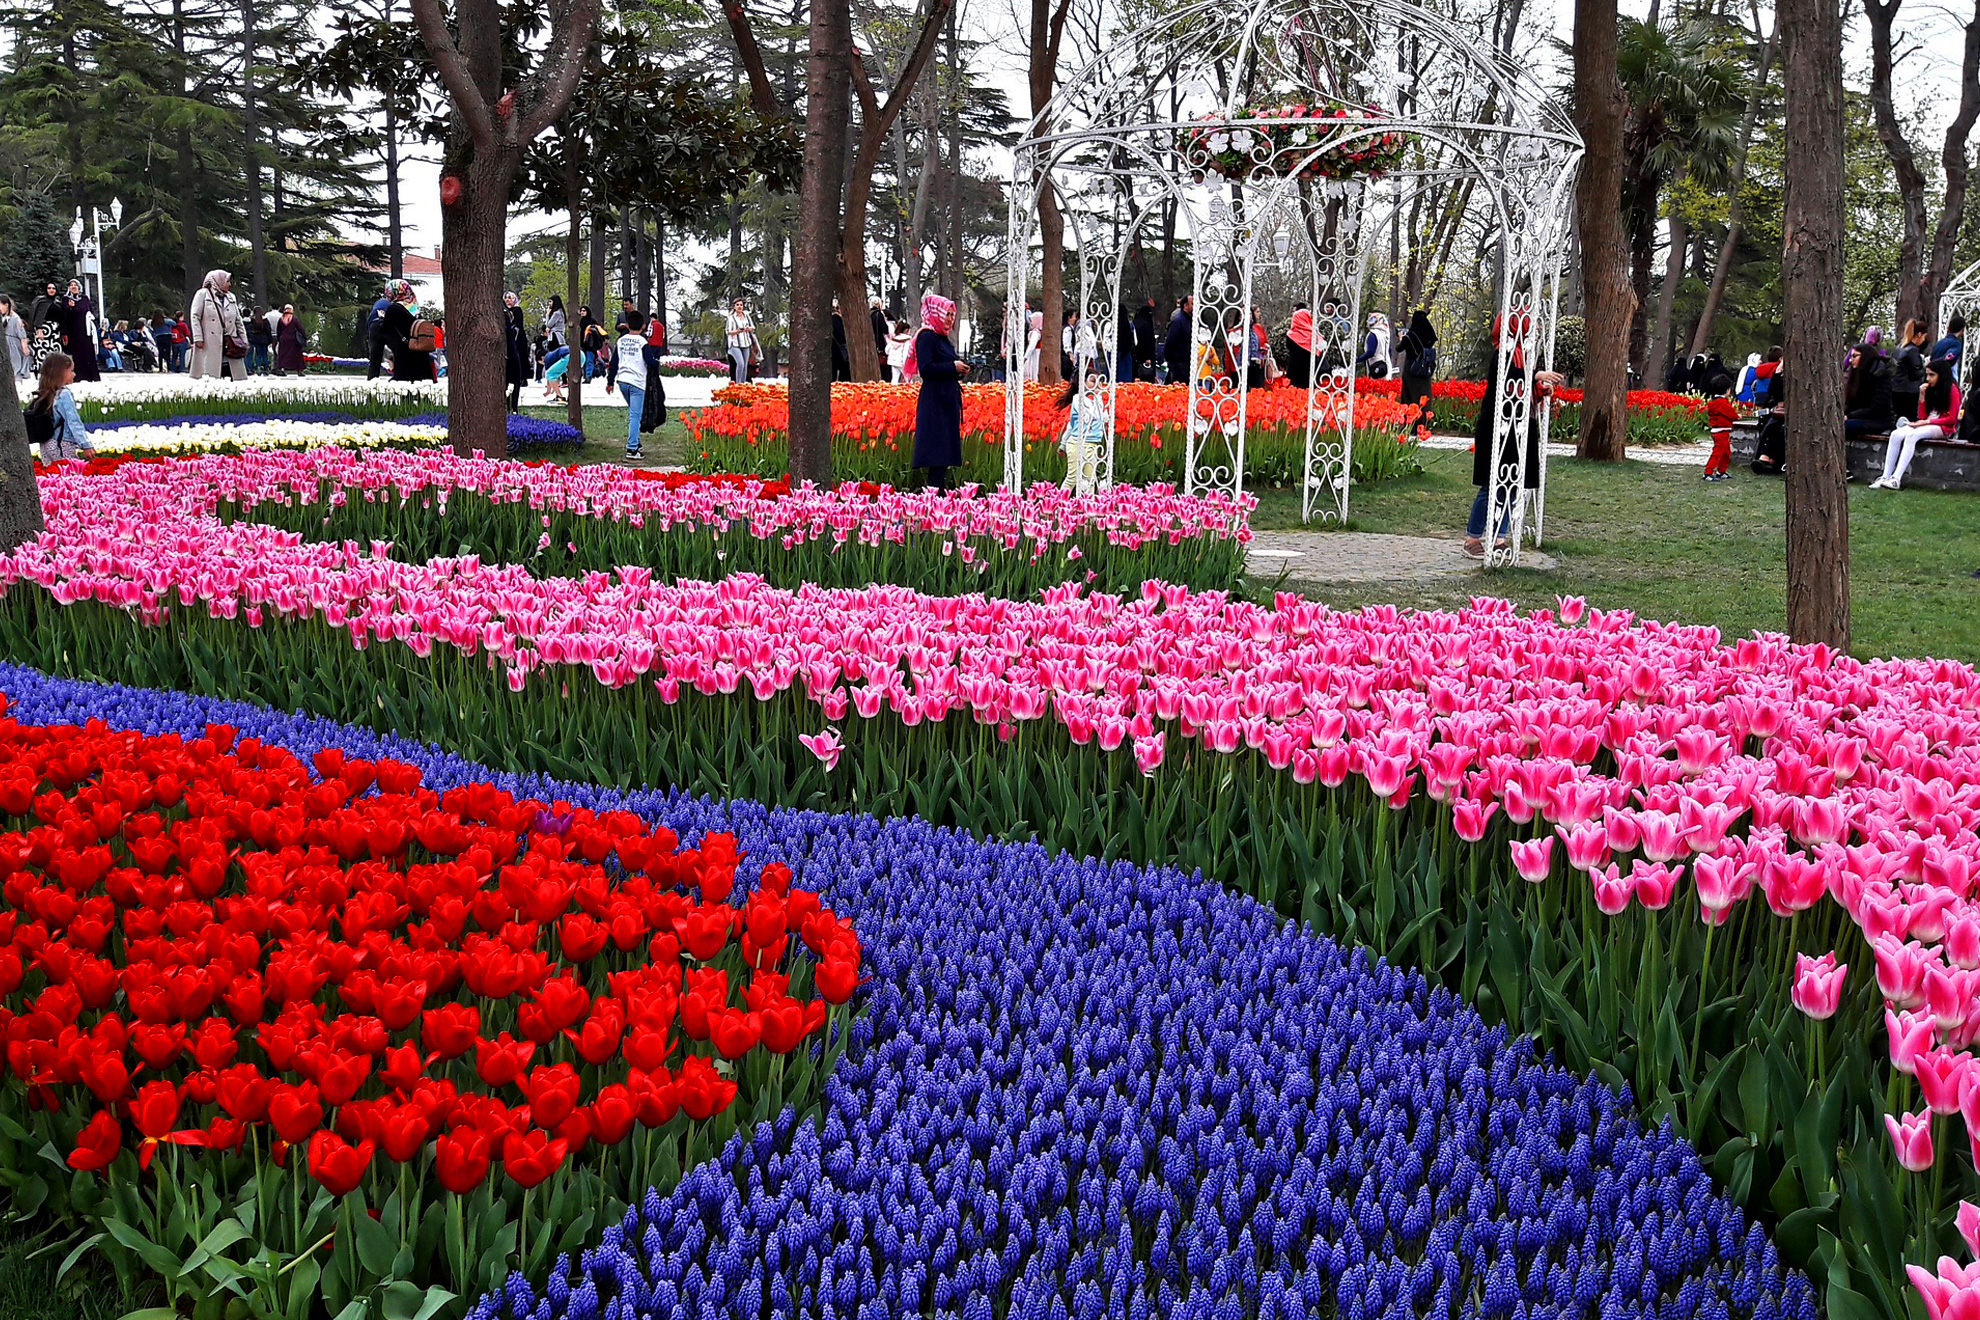 Фестивалът на лалето в Истанбул, 3 нощувки - Паркът &bdquo;Емерган&rdquo; (парка на лалетата), Истанбул, Турция - The Emirgan Park (Tulip Park), Istanbul, Turkey